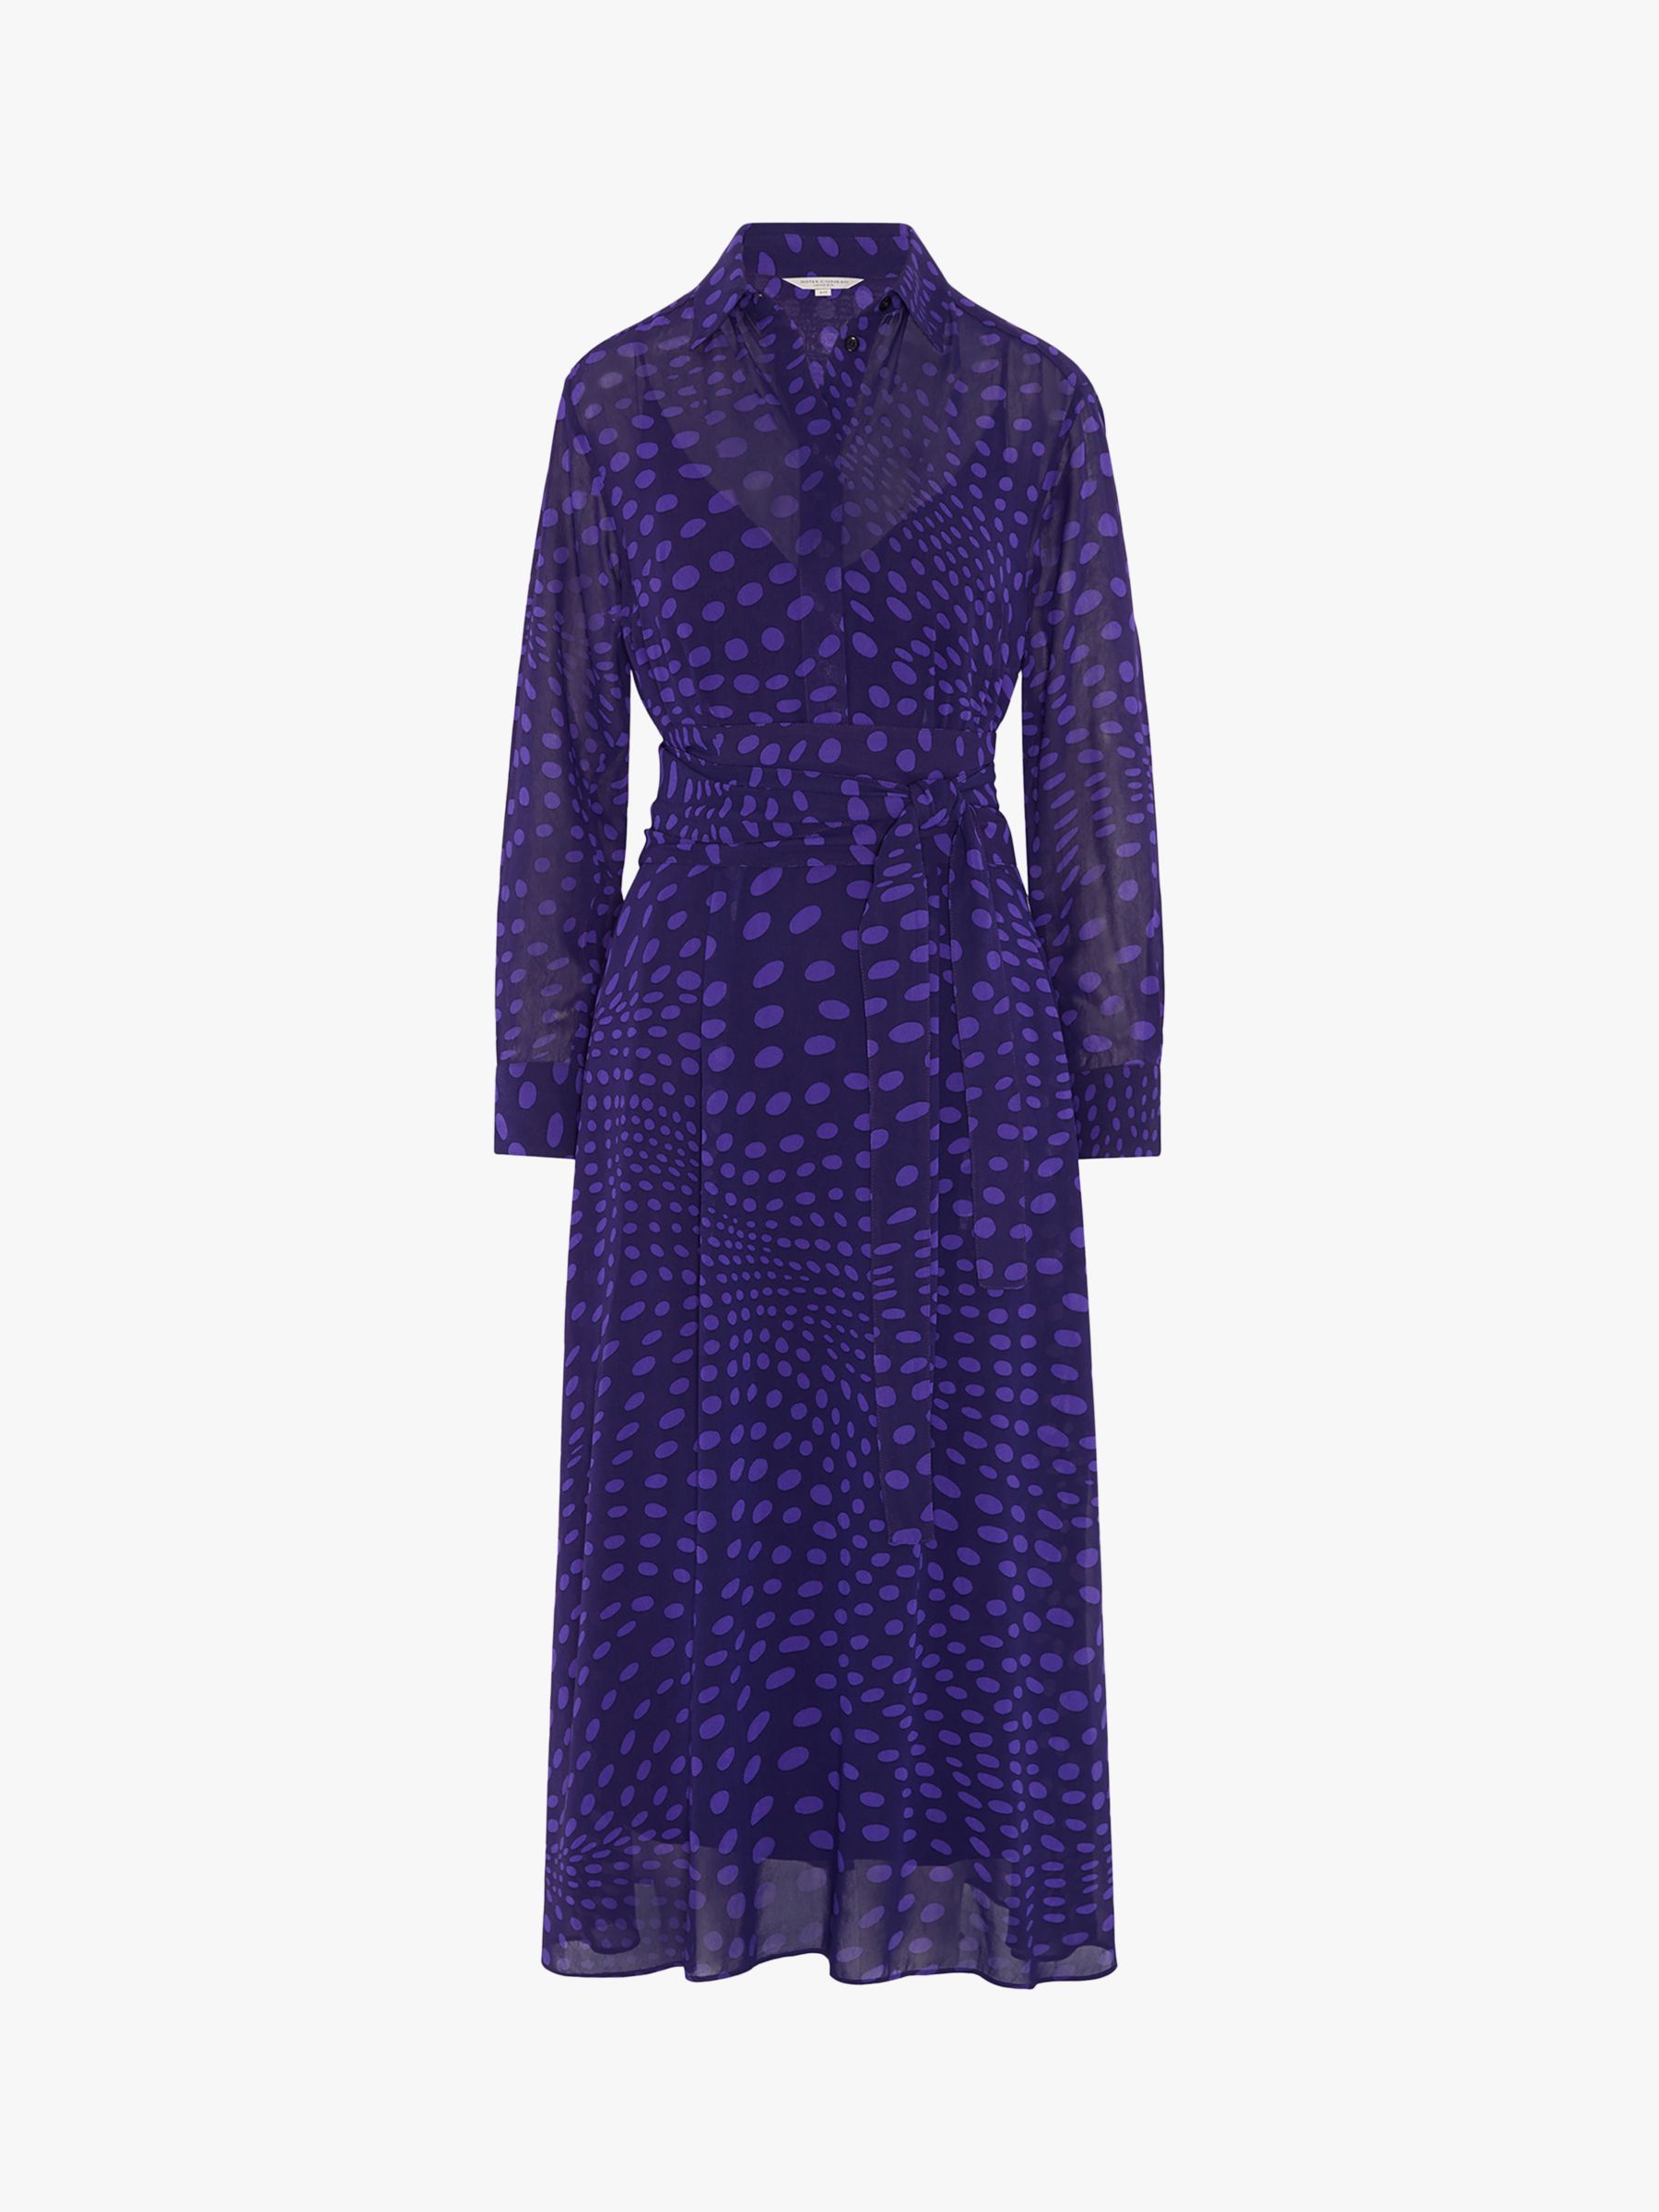 Jasper Conran London Eden Spot Print Midi Shirt Dress, Purple, 8